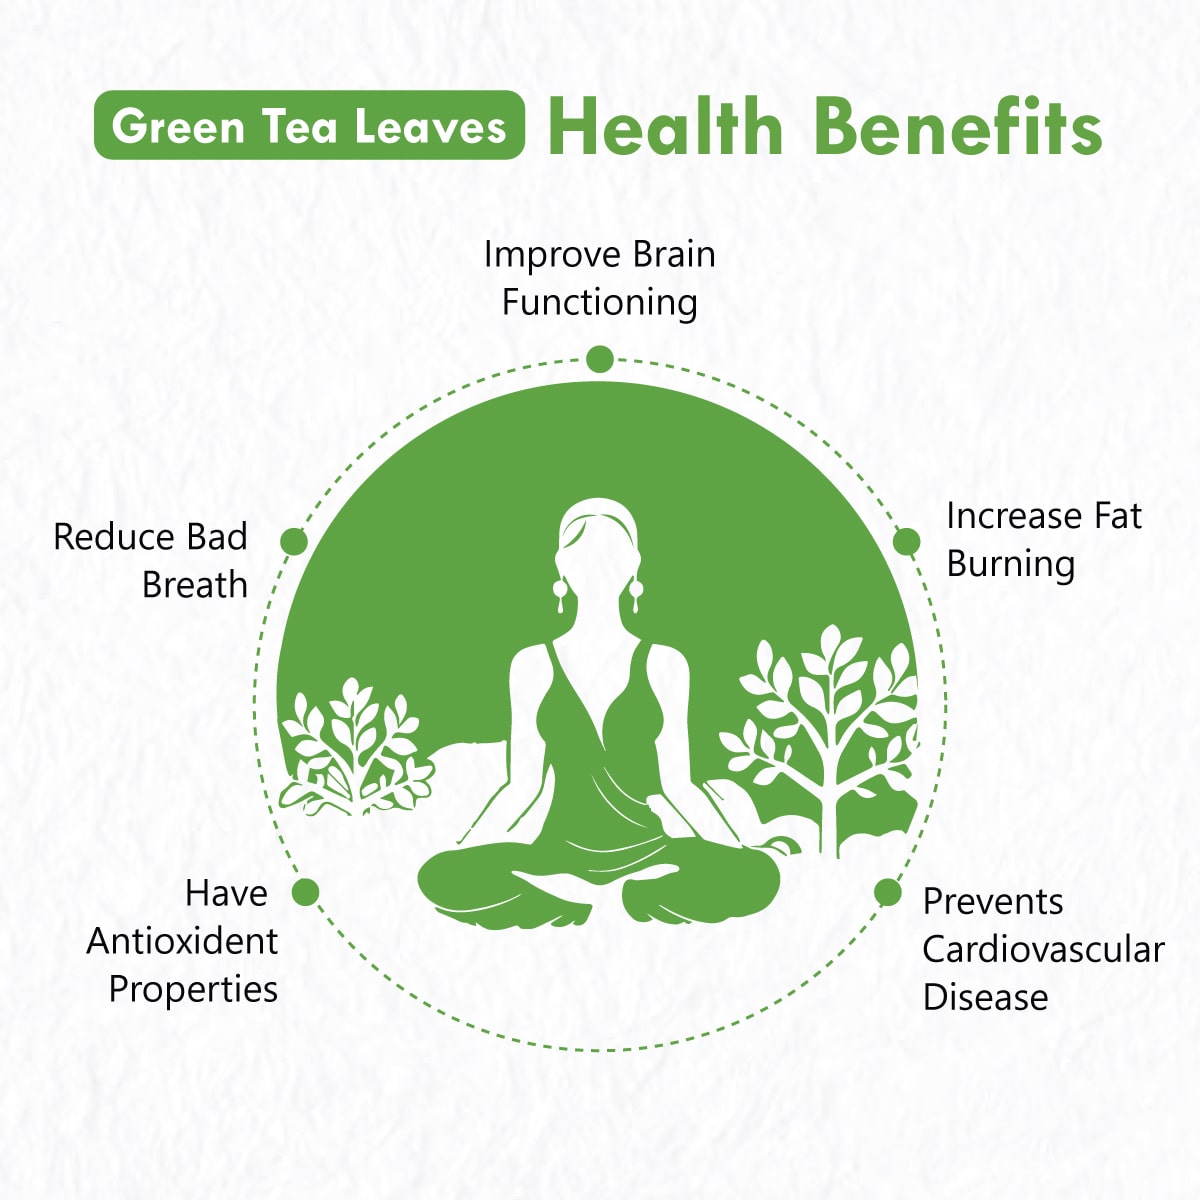 Freshville Green Tea Leaves | Improves Metabolism & Reduces Fat